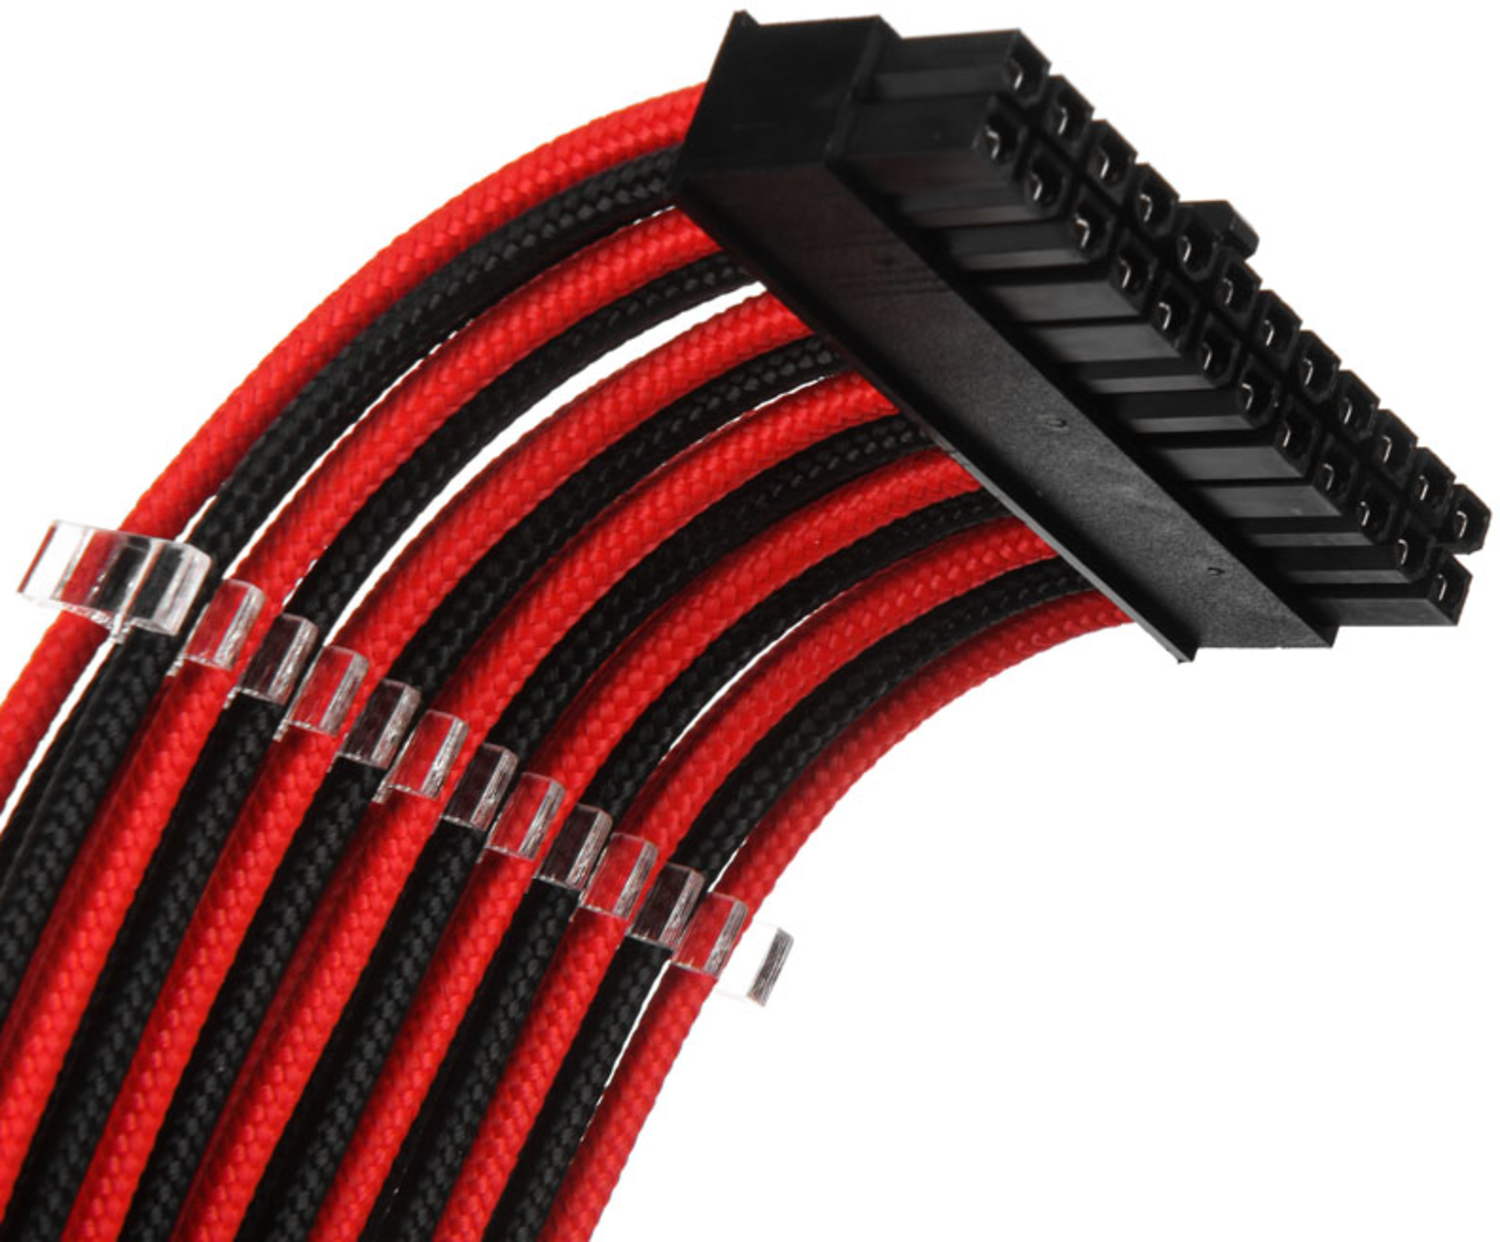 Phanteks - Kit de Expansión Phanteks Cables Sleeved 50cm Negro / Rojo